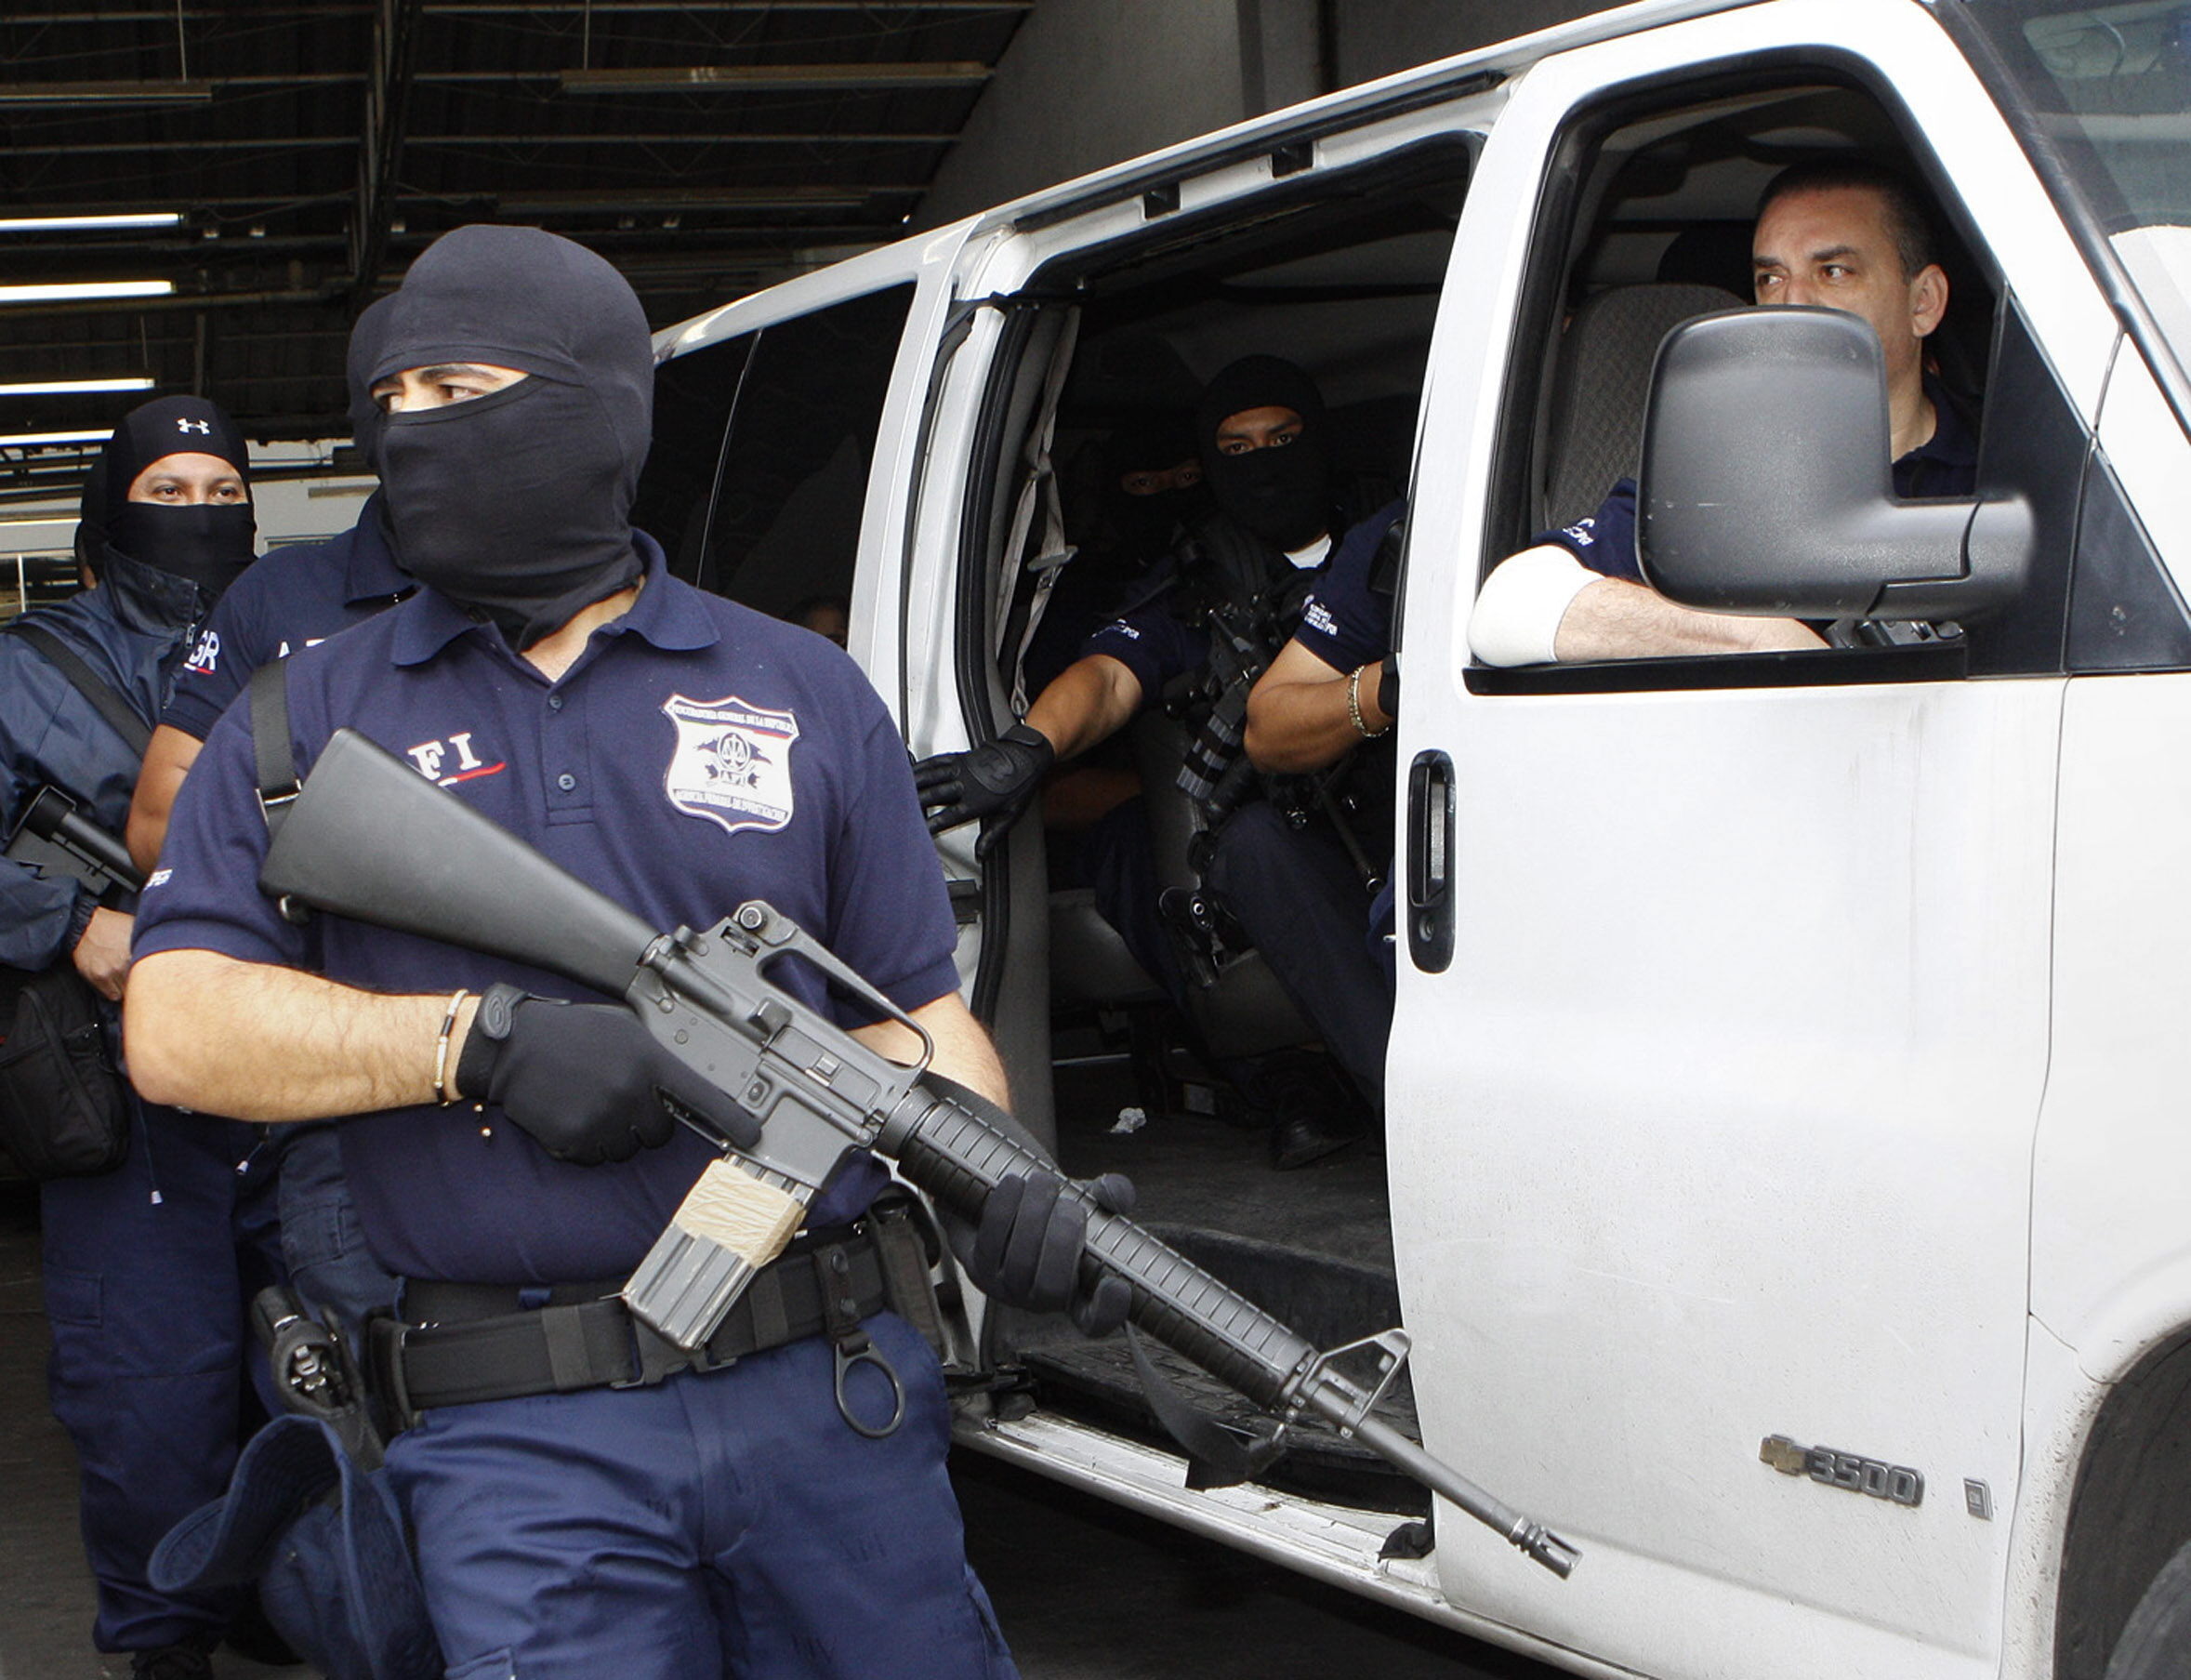 Cayeron 7 integrantes de “Los Capetos”, célula delictiva dedicada a la extorsión y secuestro en Morelos